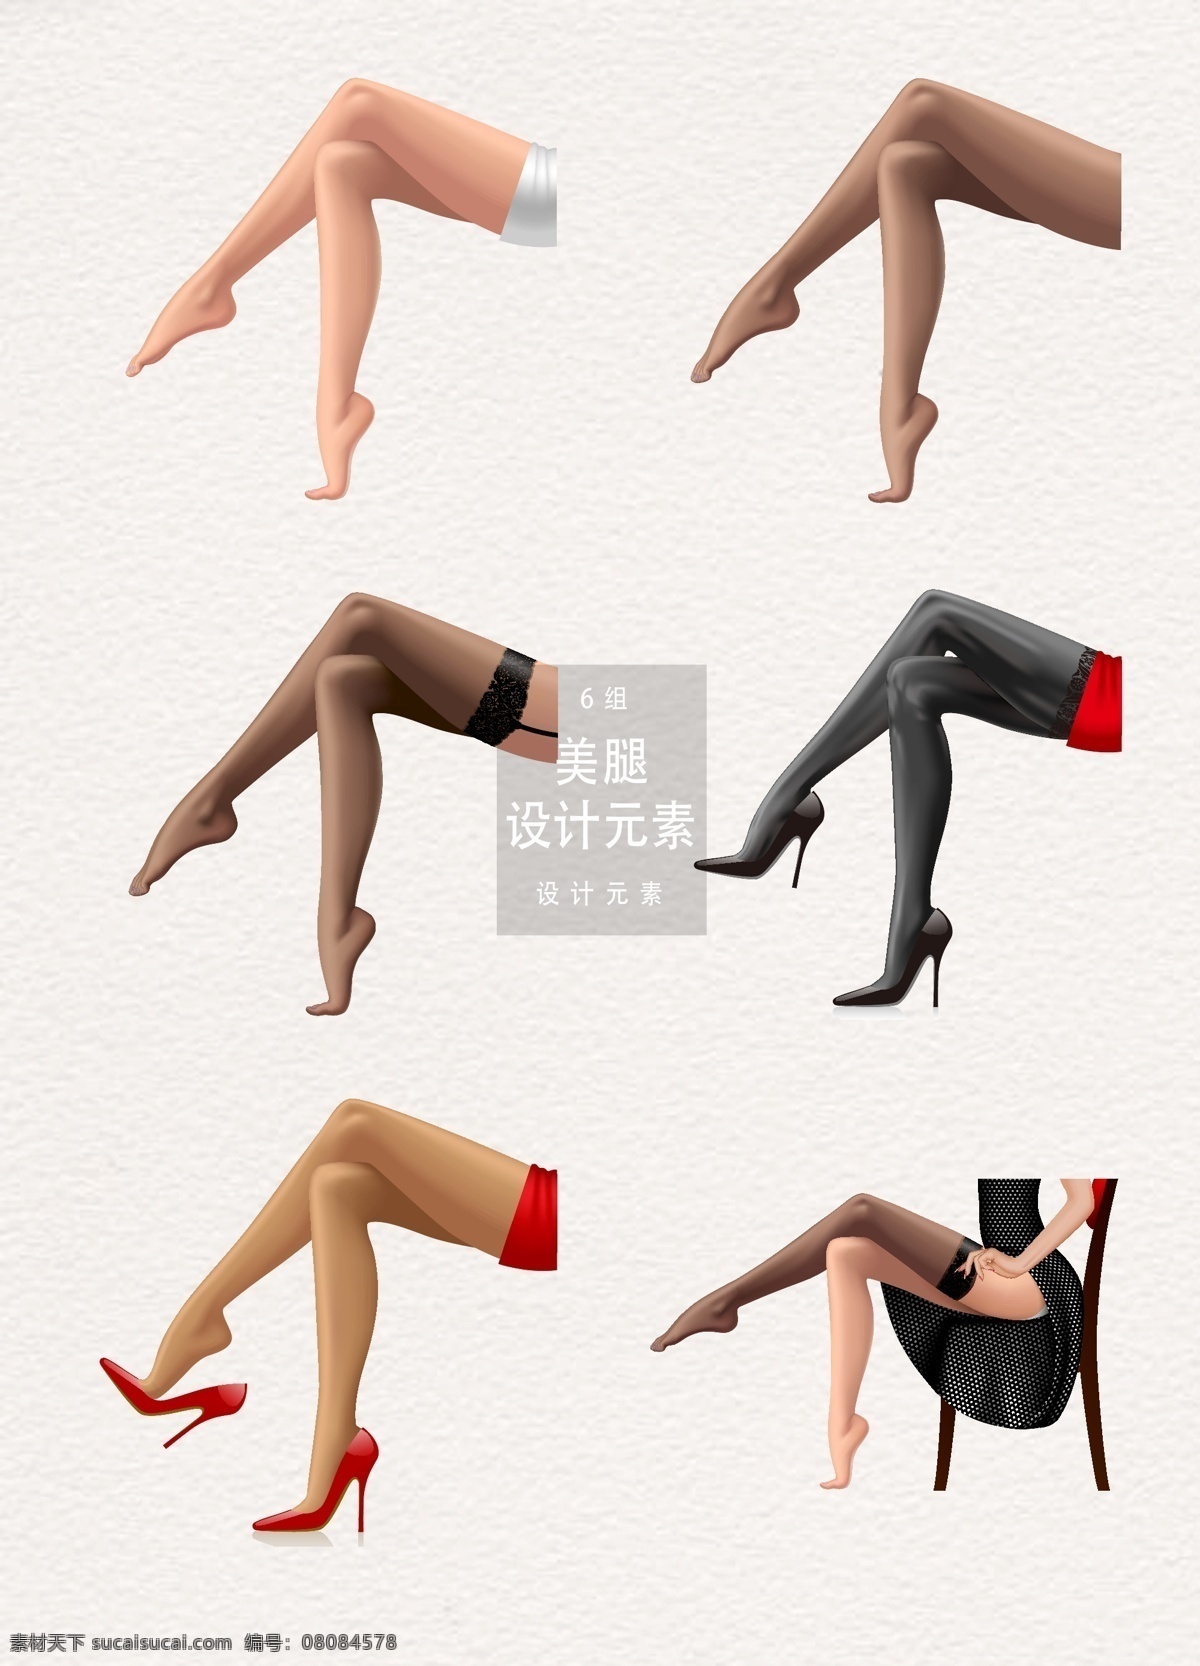 性感 美 腿 元素 设计元素 矢量素材 高跟鞋 美女 性感美腿 美腿